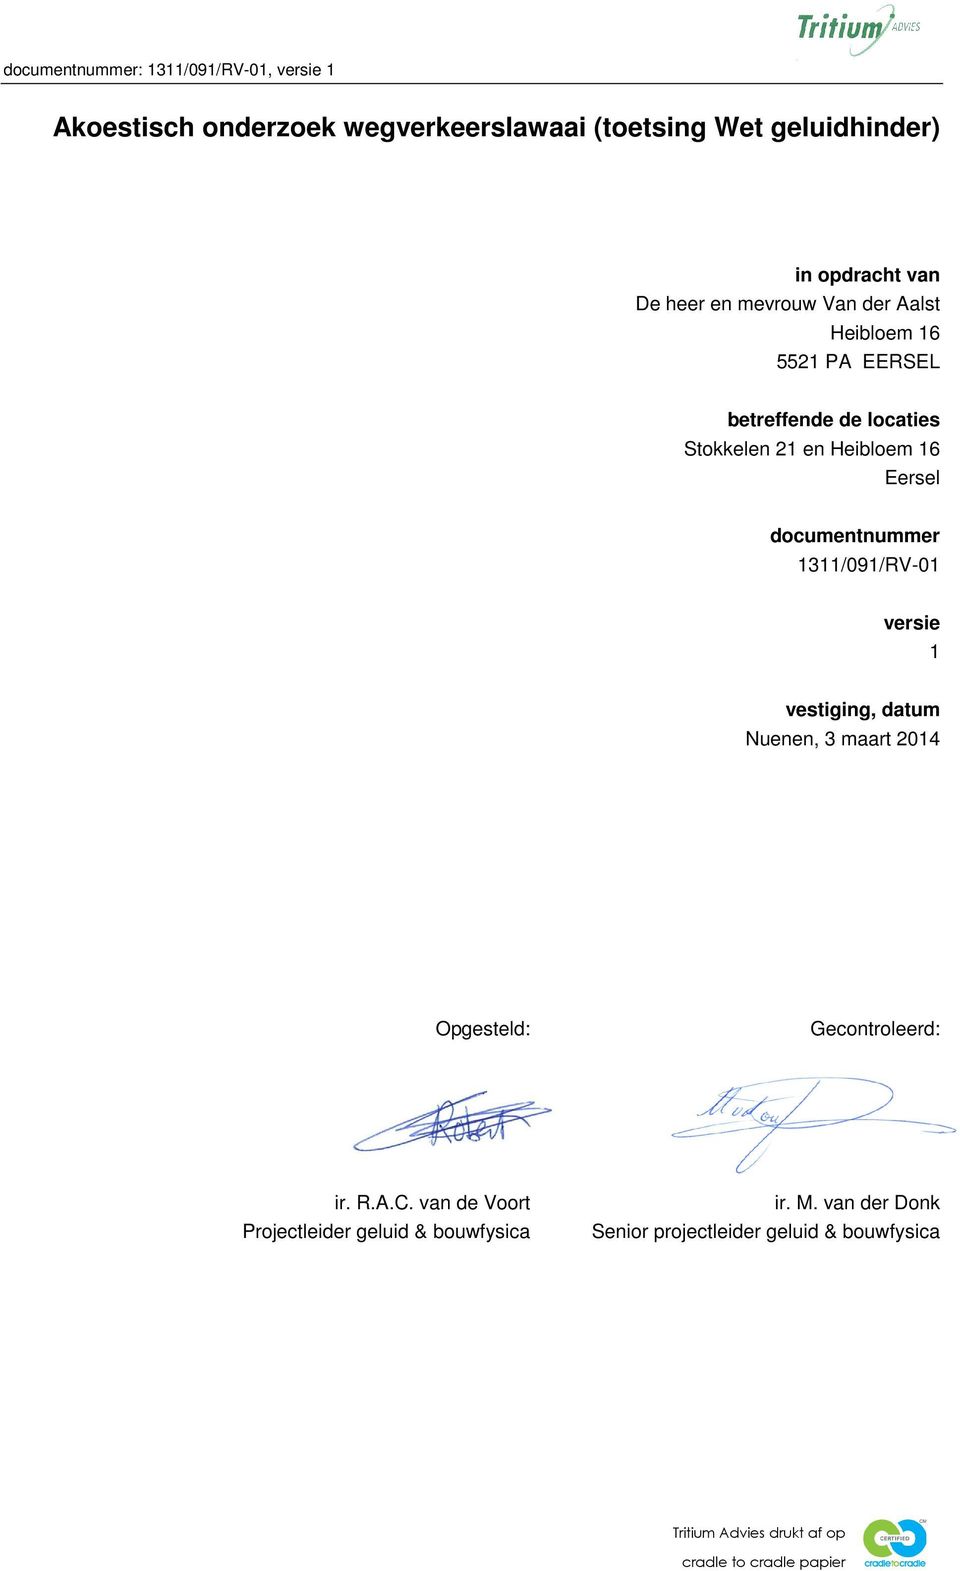 documentnummer 1311/091/RV-01 versie 1 vestiging, datum Nuenen, 3 maart 2014 Opgesteld: Gecontroleerd: ir. R.A.C.